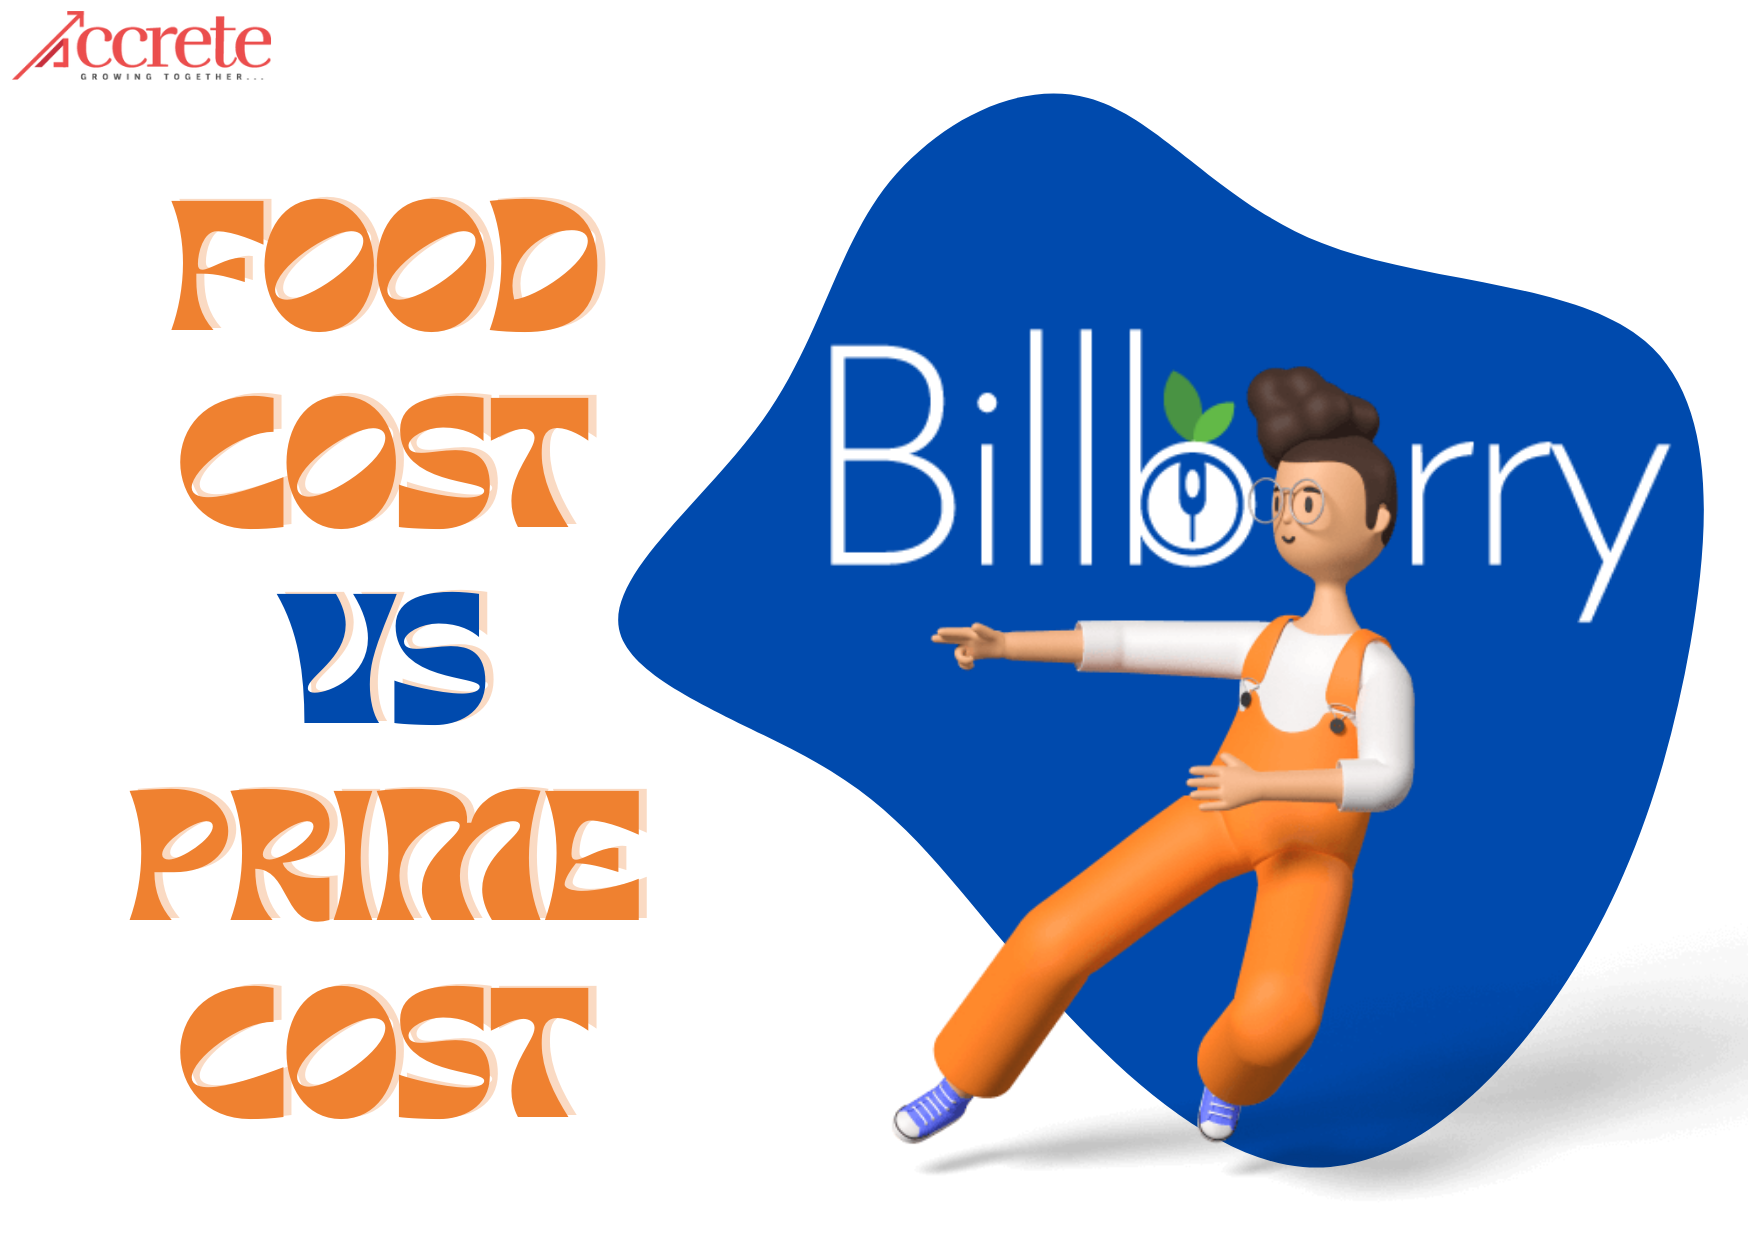 Food cost vs Prime Cost